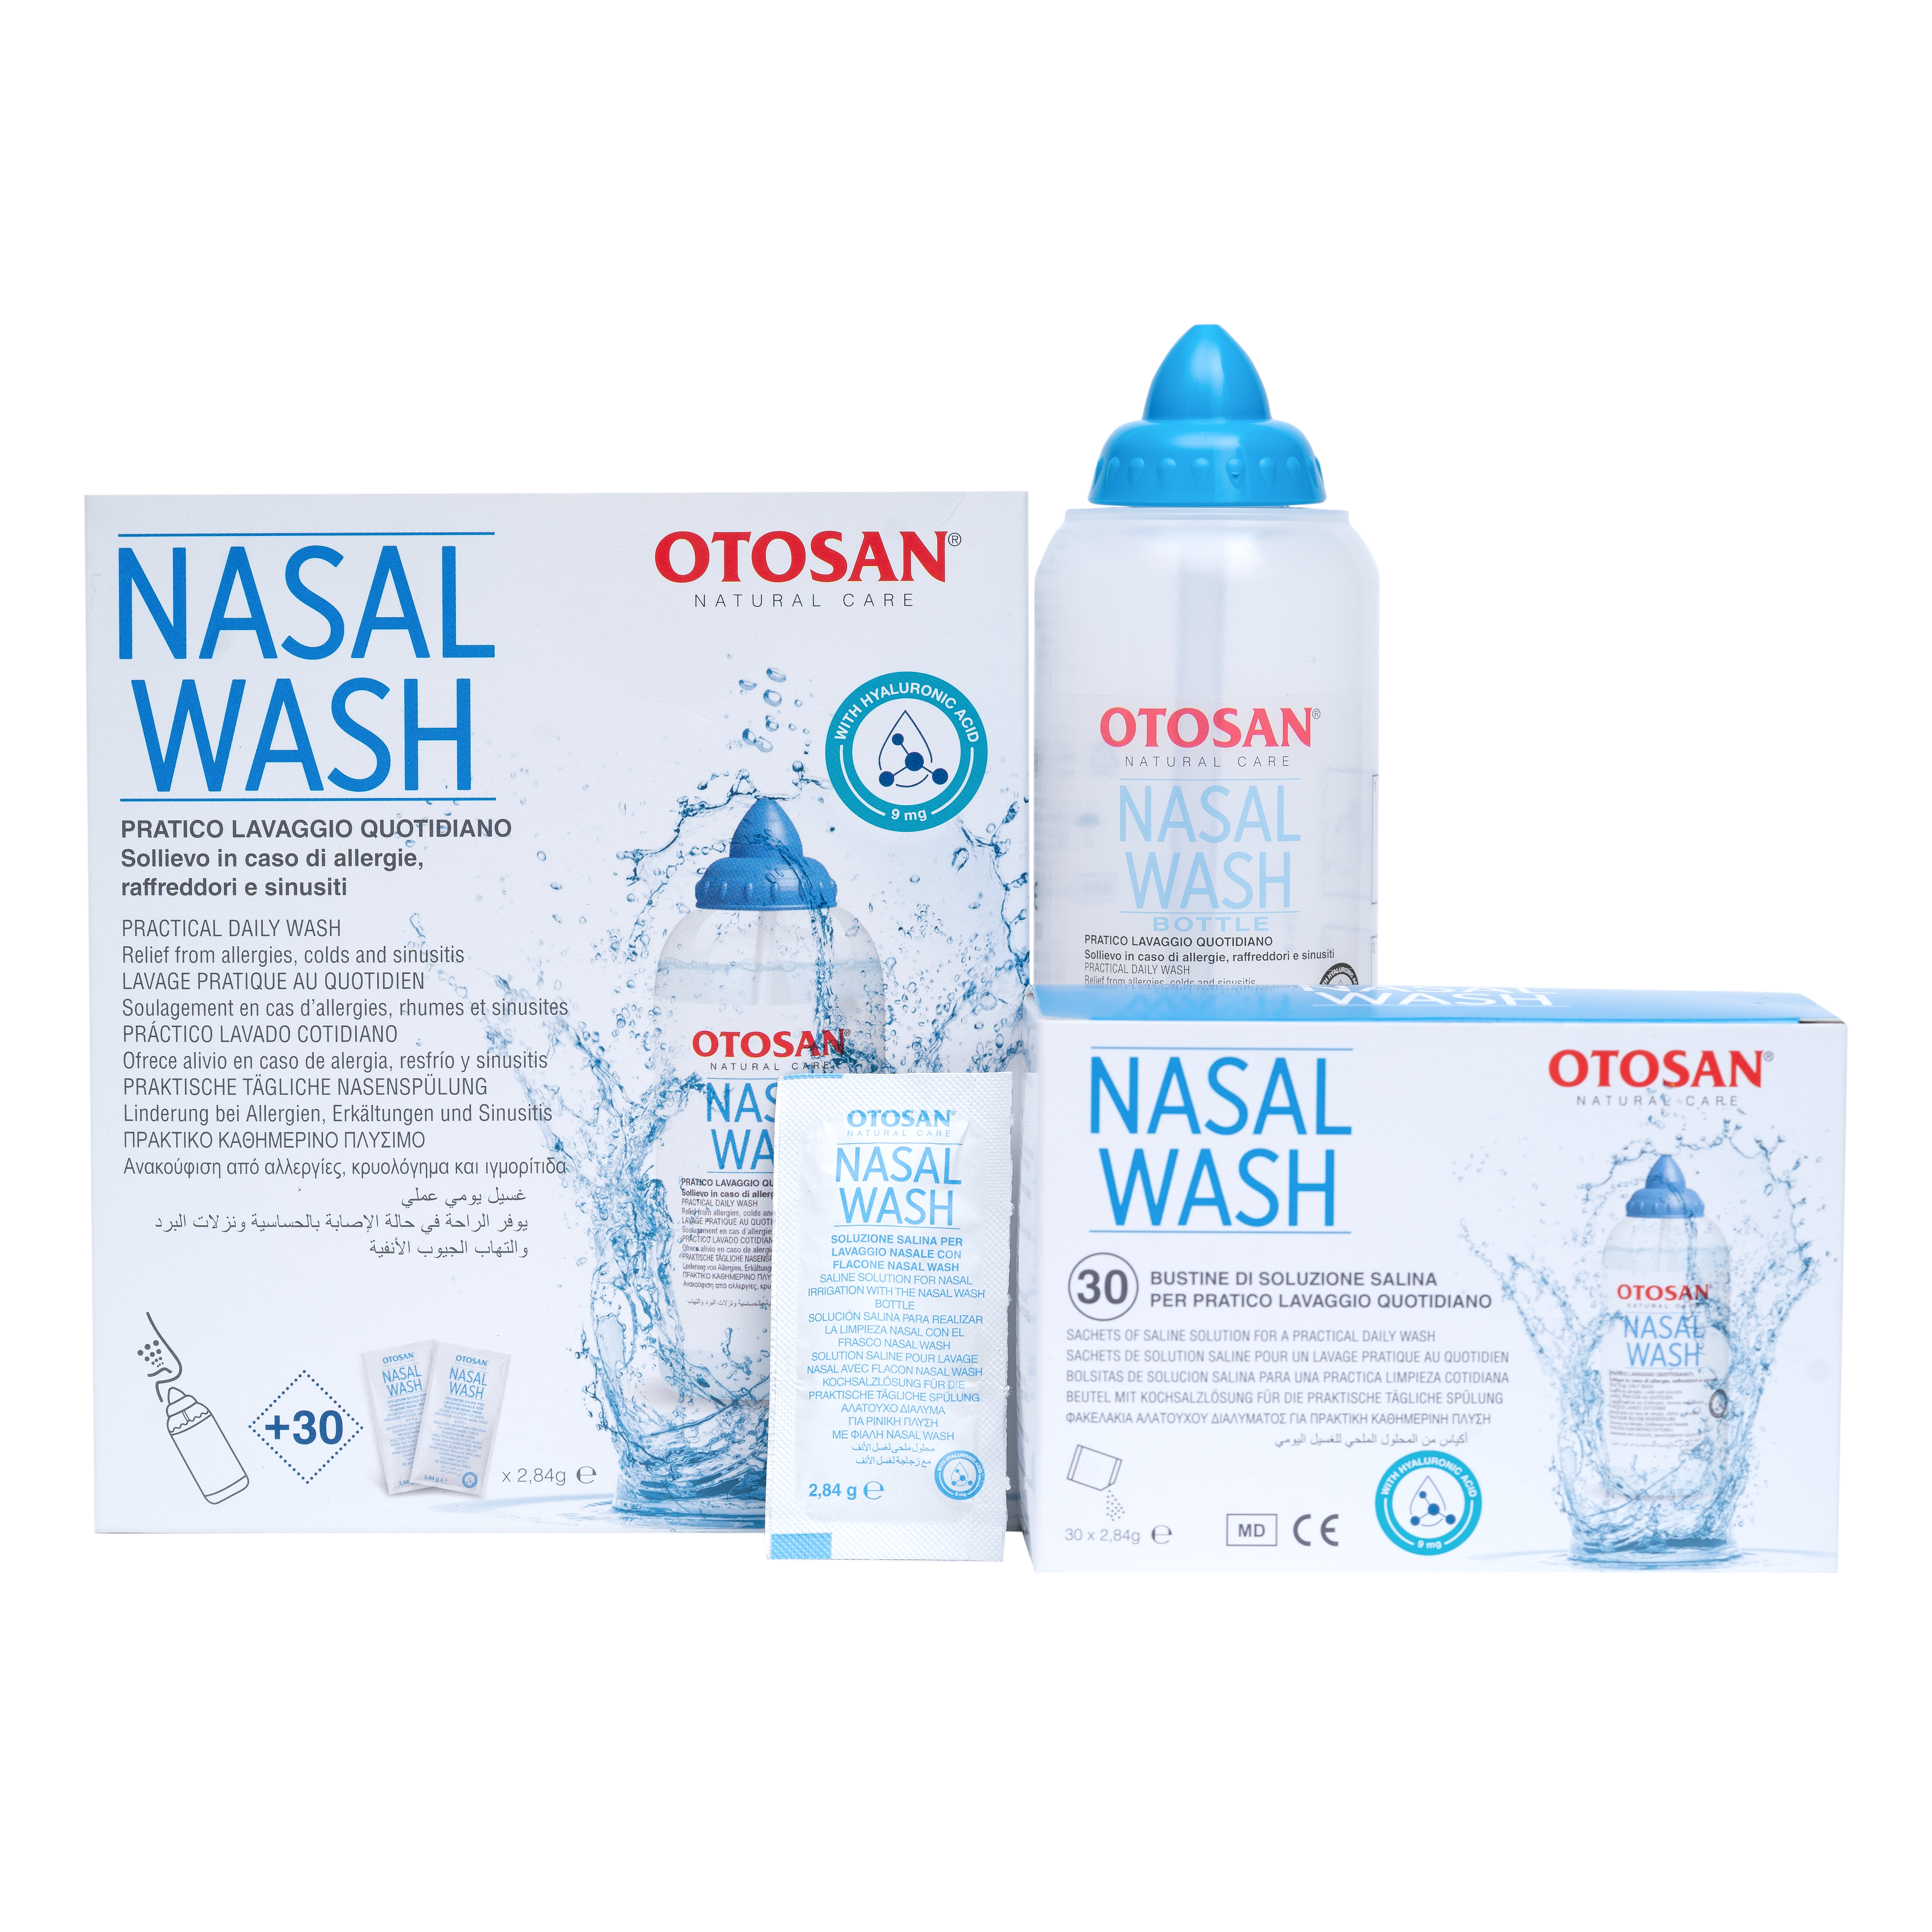 Bộ rửa mũi đã được nguyên cứu lâm sàng từ thương hiệu Otosan - Italy